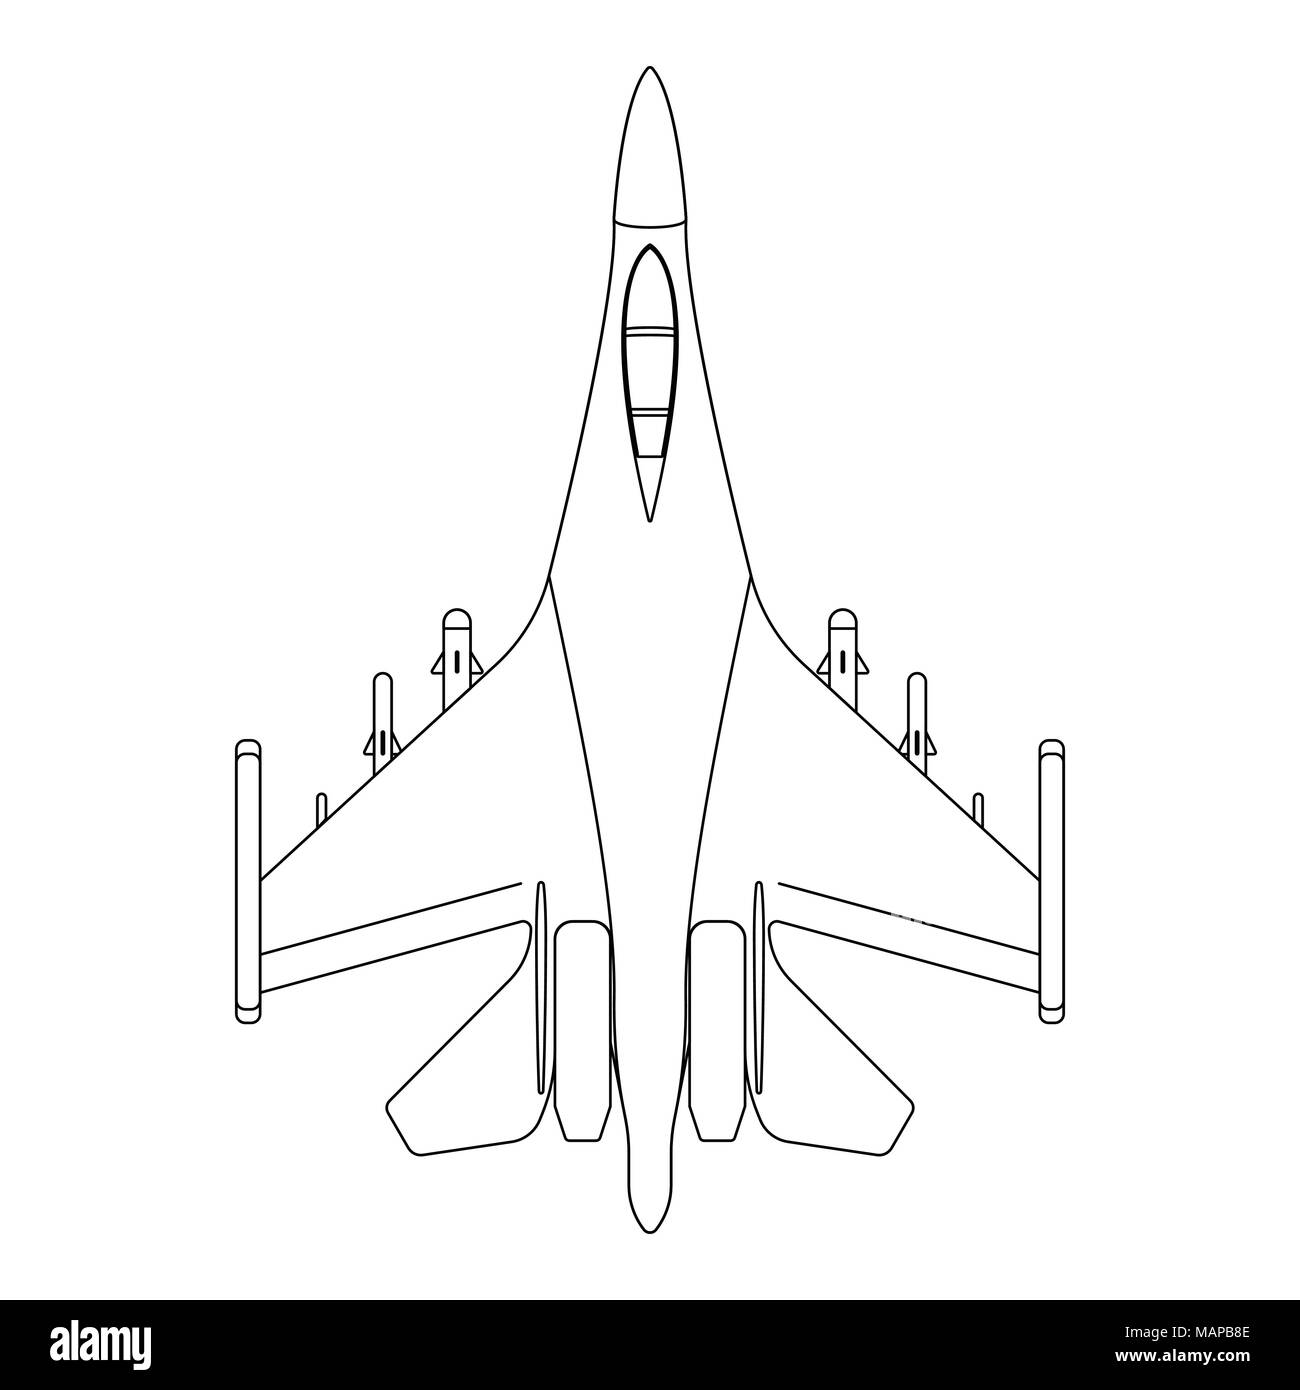 Kampfflugzeuge skizzieren. Militärische Ausrüstung Symbol. Vector Illustration. Stock Vektor